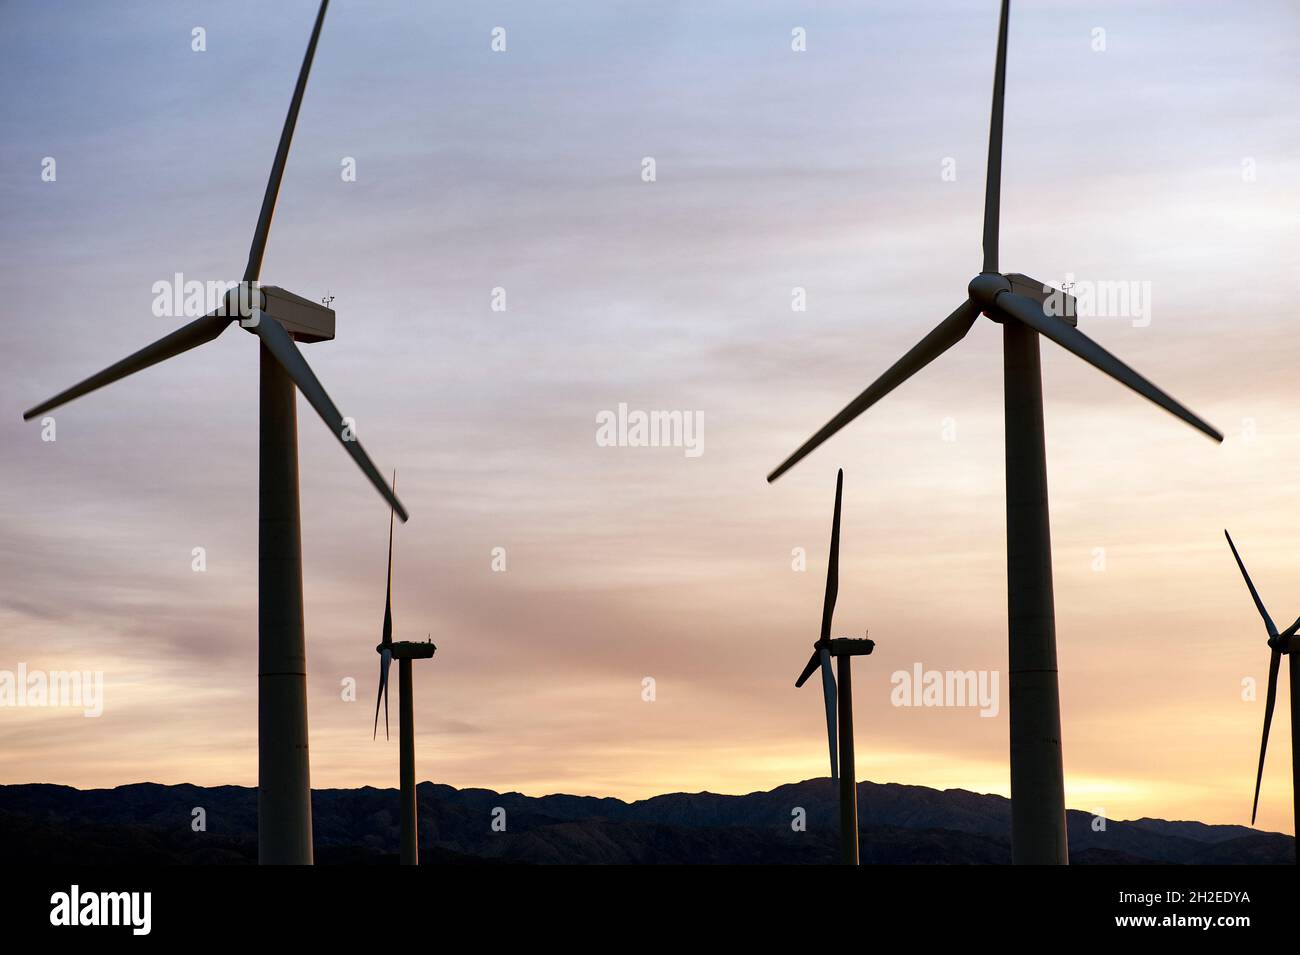 Turbine eoliche che generano energia elettrica nel deserto della California meridionale Foto Stock